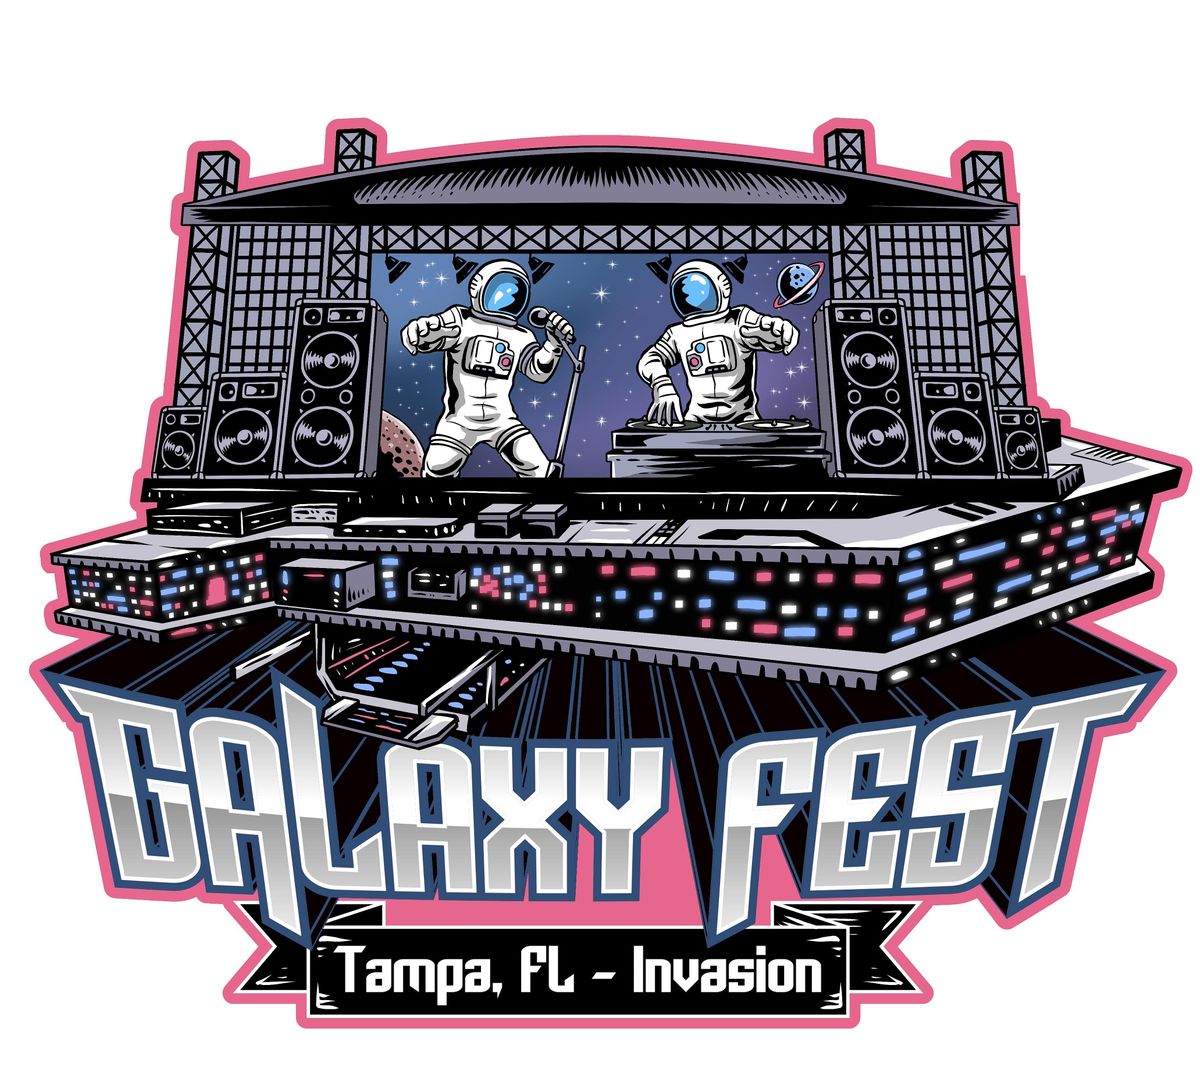 Galaxy Festival - Tampa, FL Invasion